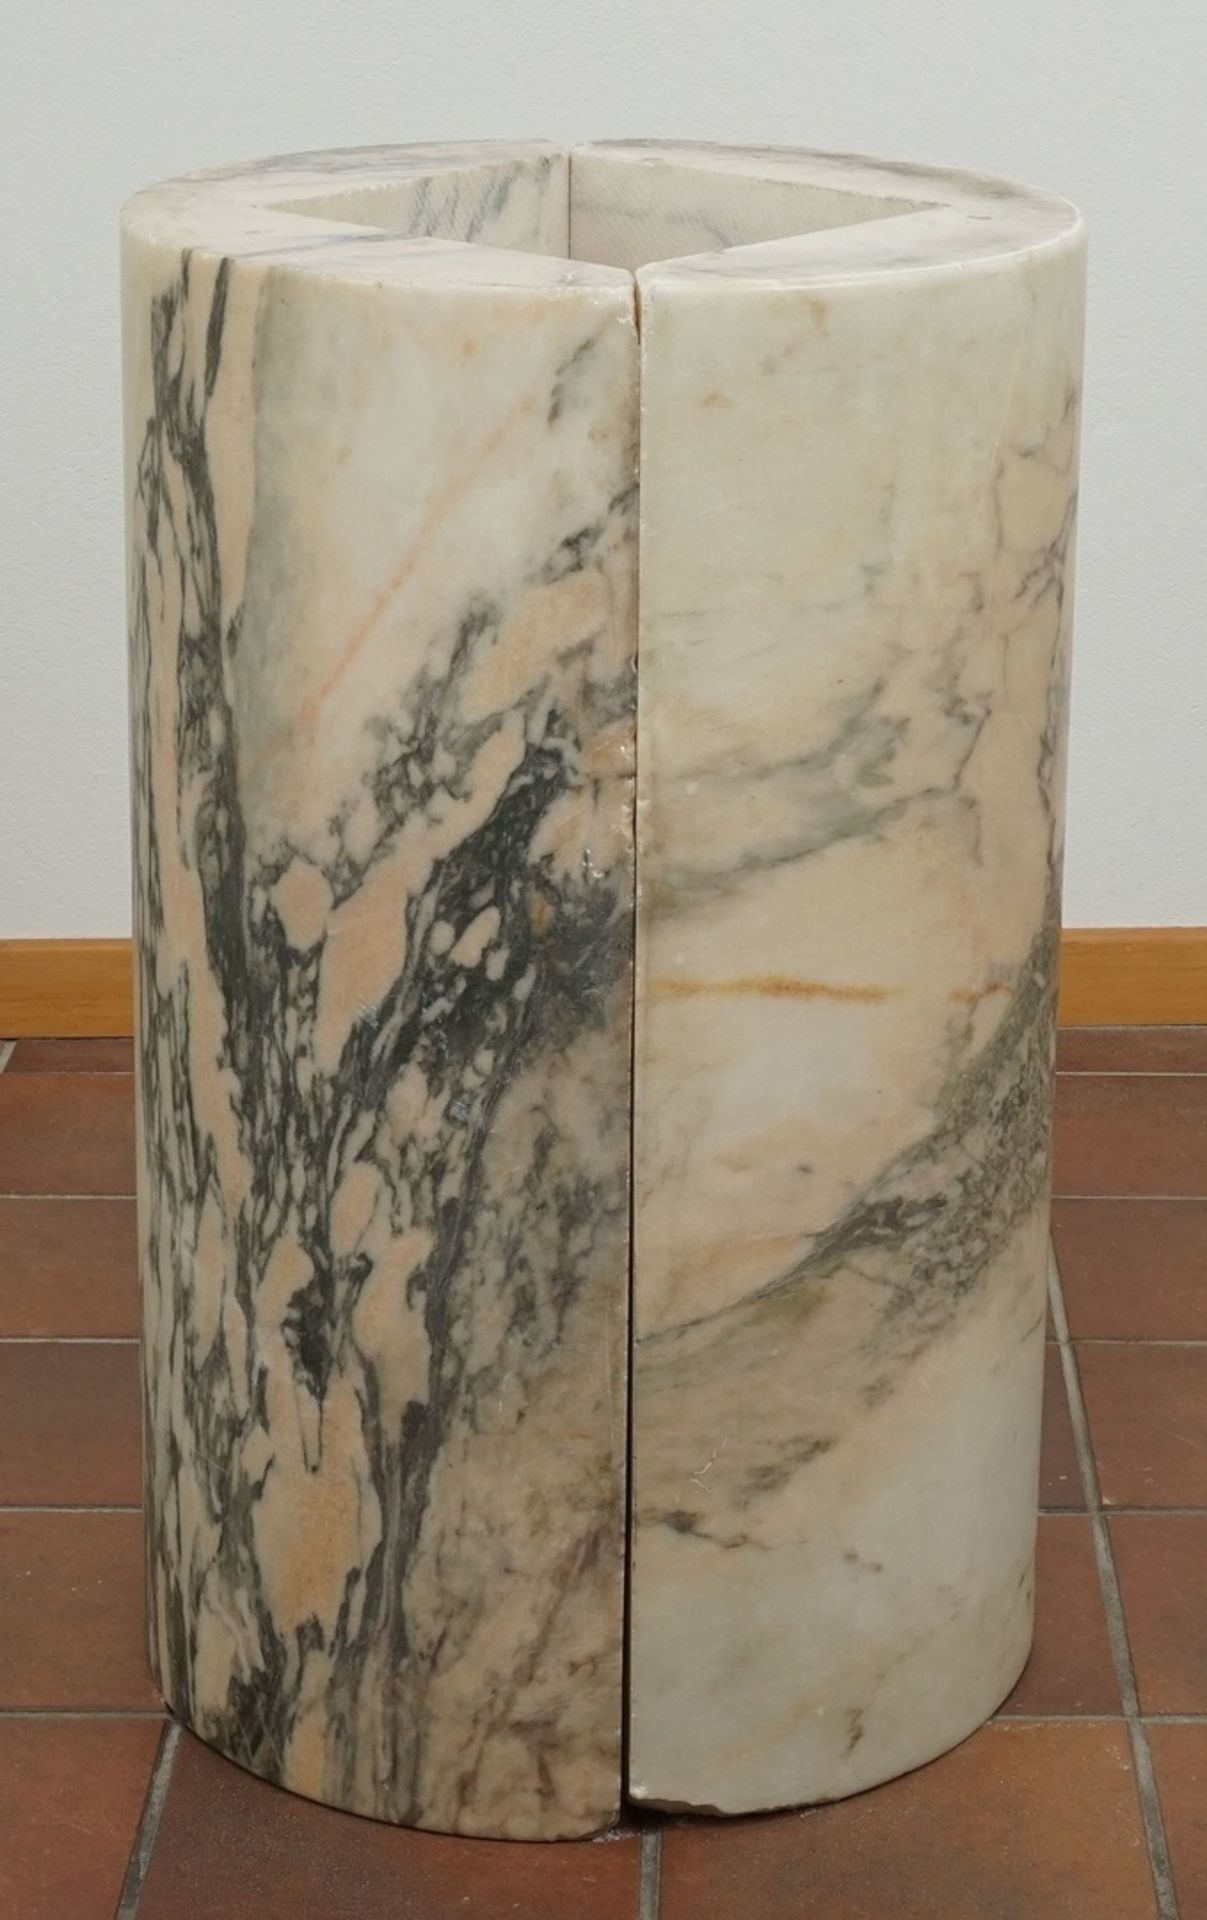 Marmor Stele / Postamentzweiteilig, schwarz-weiß-grün-orange marmoriert, altersgemäßer Zustand, - Image 2 of 3